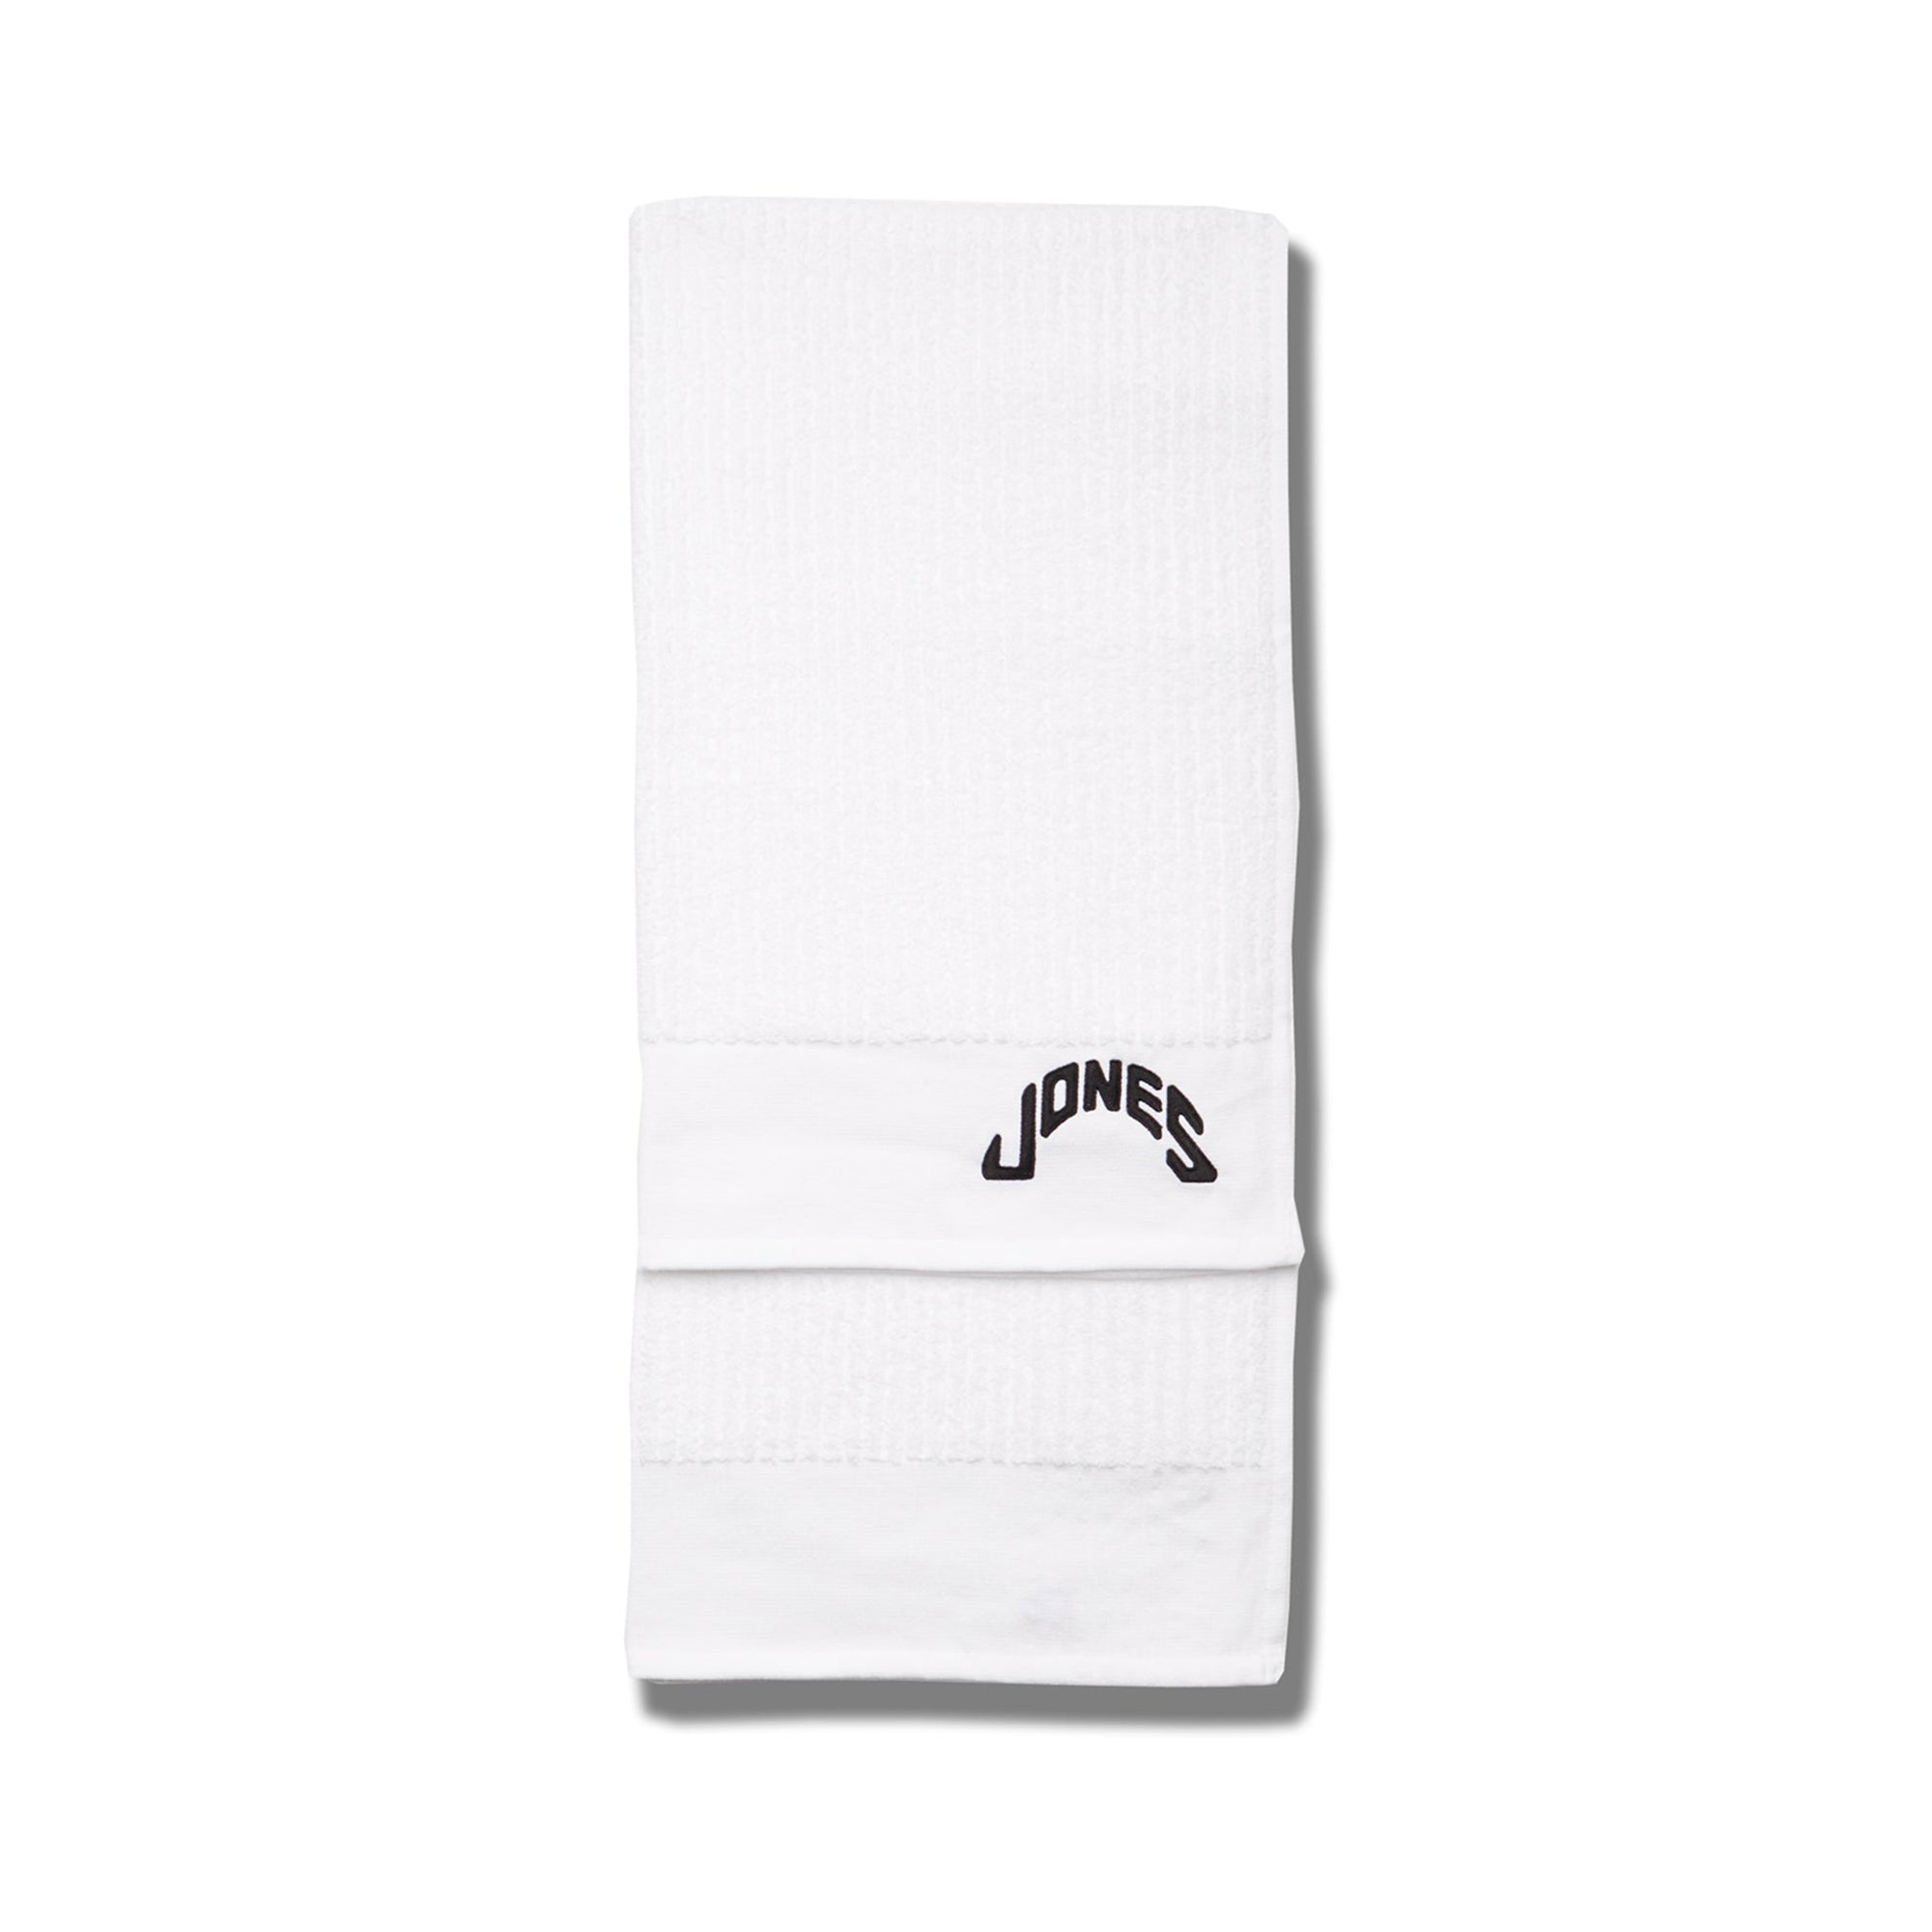 jones-tour-towel-tl109-white-white